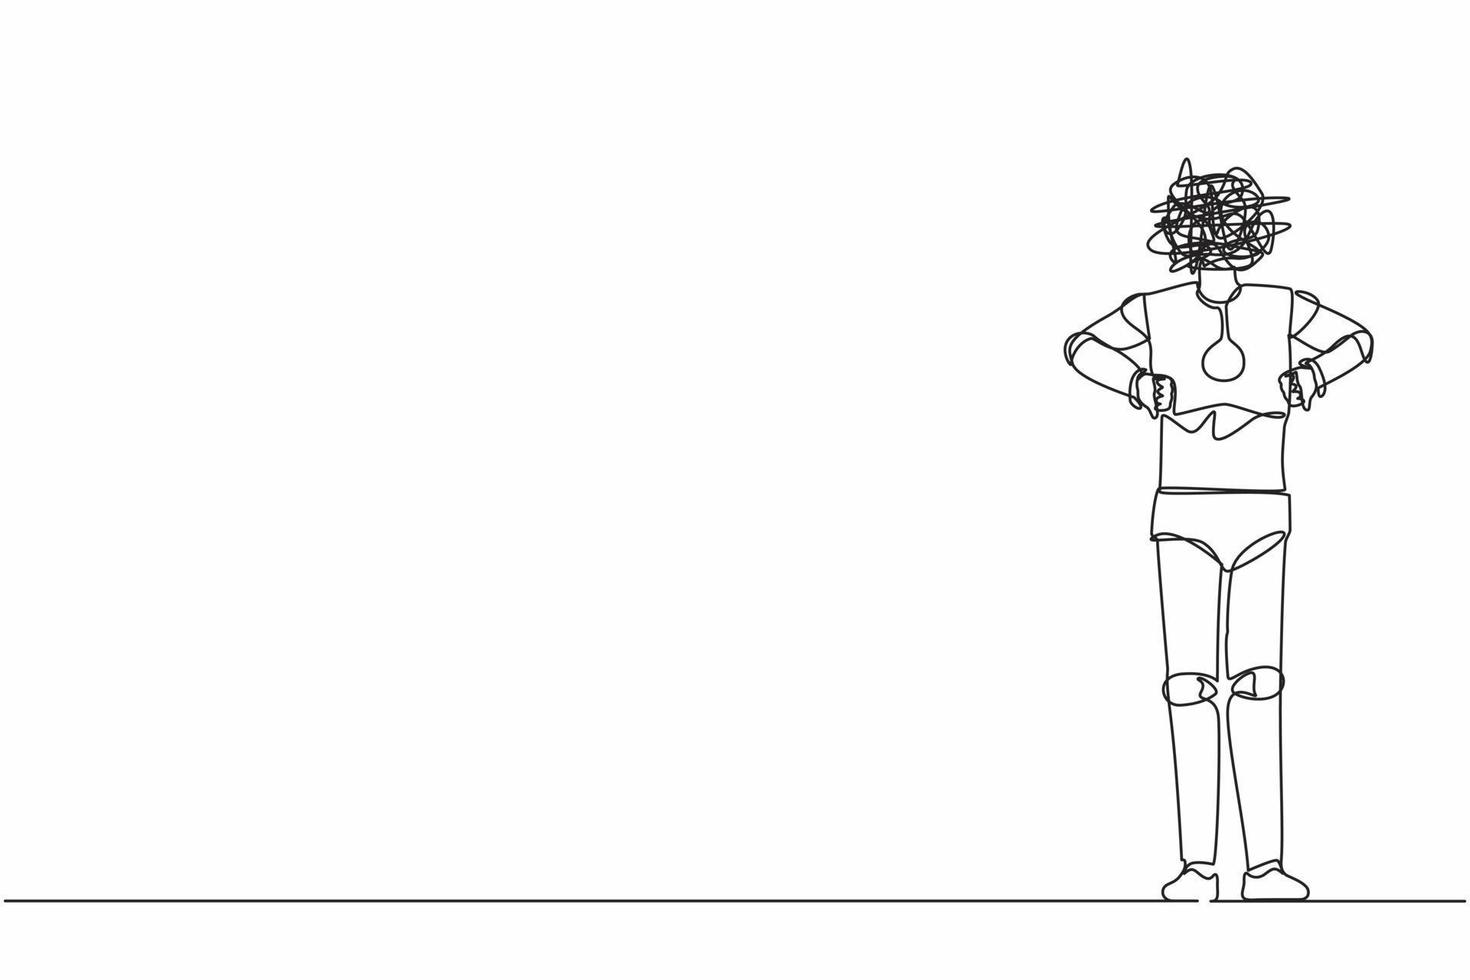 Ein Strichzeichnungsroboter mit runden Kritzeleien anstelle des Kopfes, stehend und Daumen nach unten zeigend. Uneinigkeit, Abneigung. humanoider Roboter Kybernetik. durchgehende Liniendesign-Vektorillustration vektor